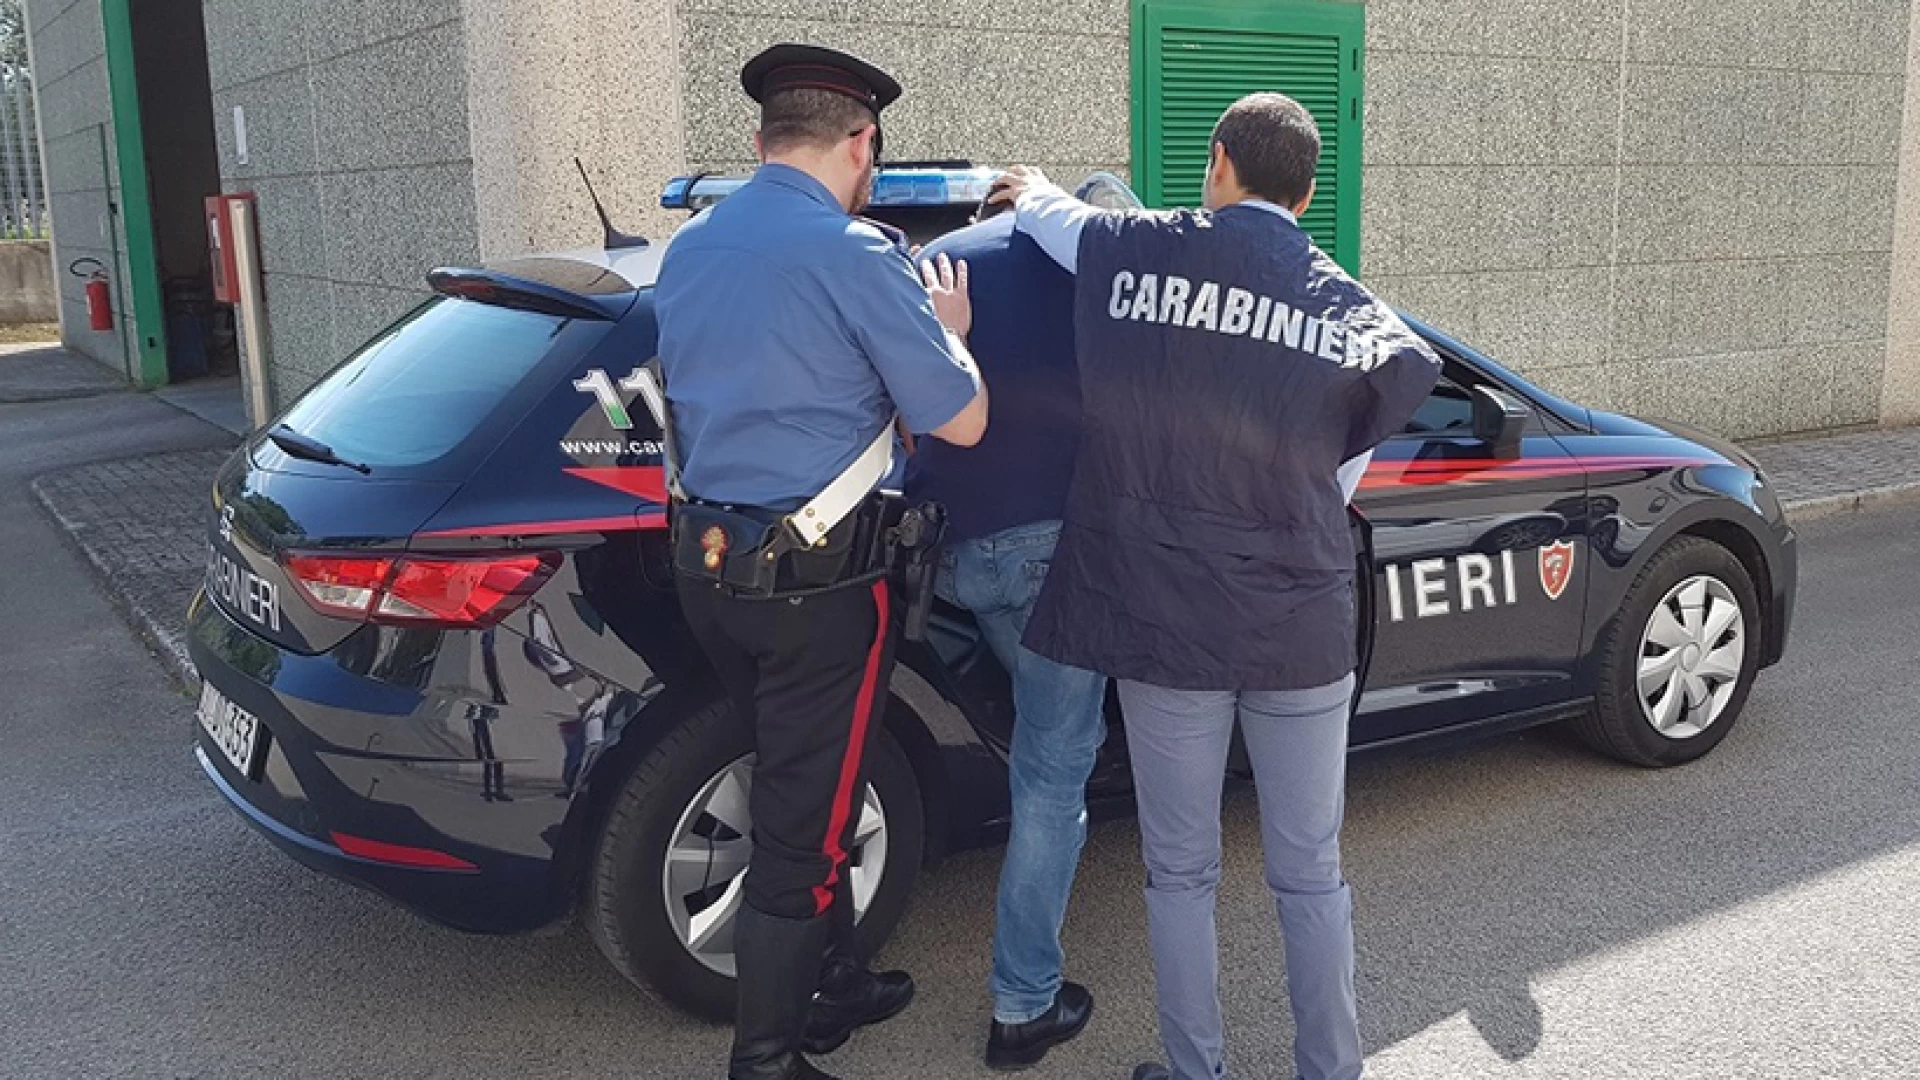 Venafro: I Carabinieri arrestano un uomo del posto per “stalking”.